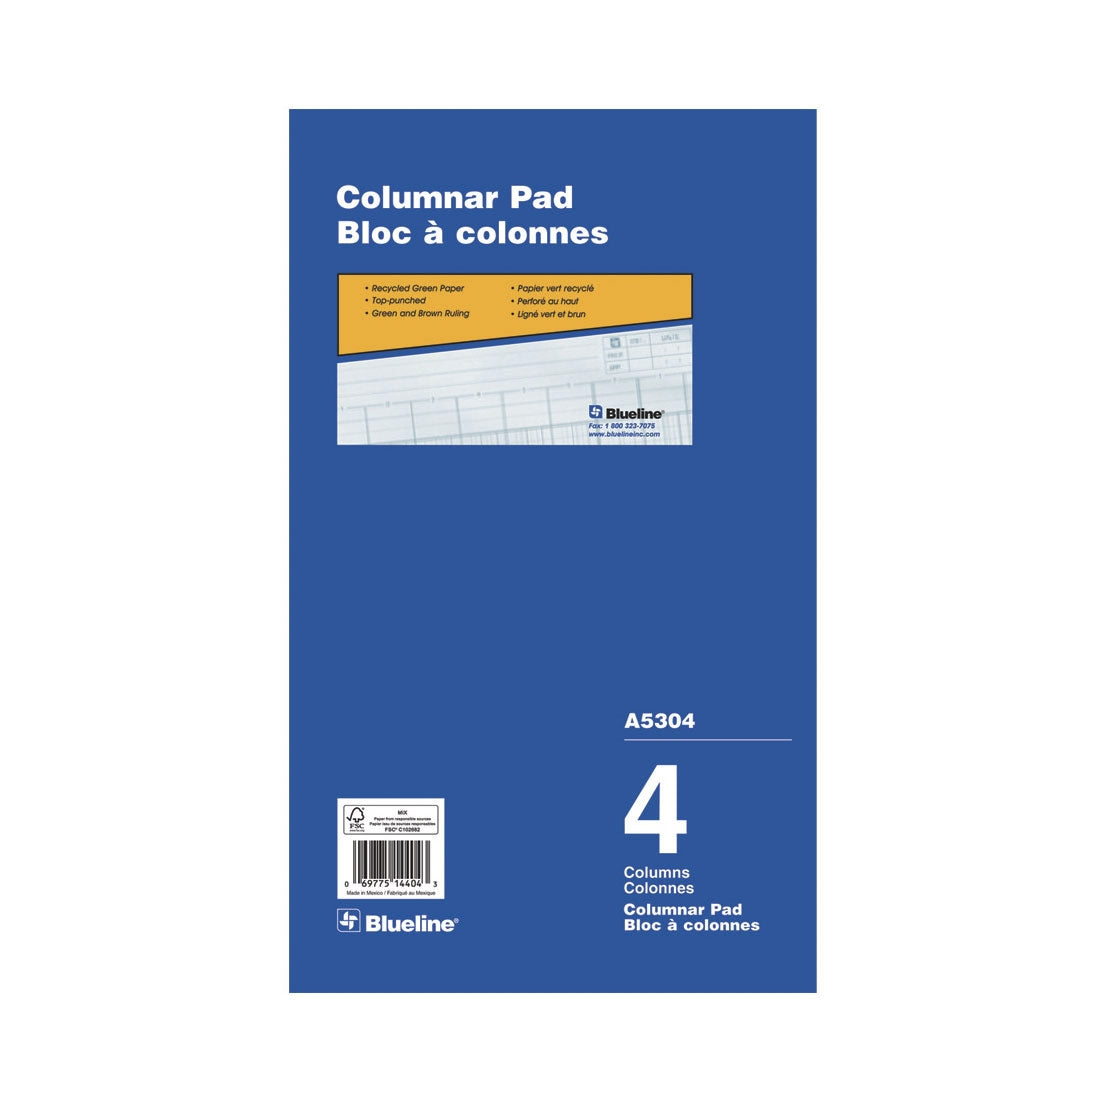 Columnar Pad - 4 Columns, A5304